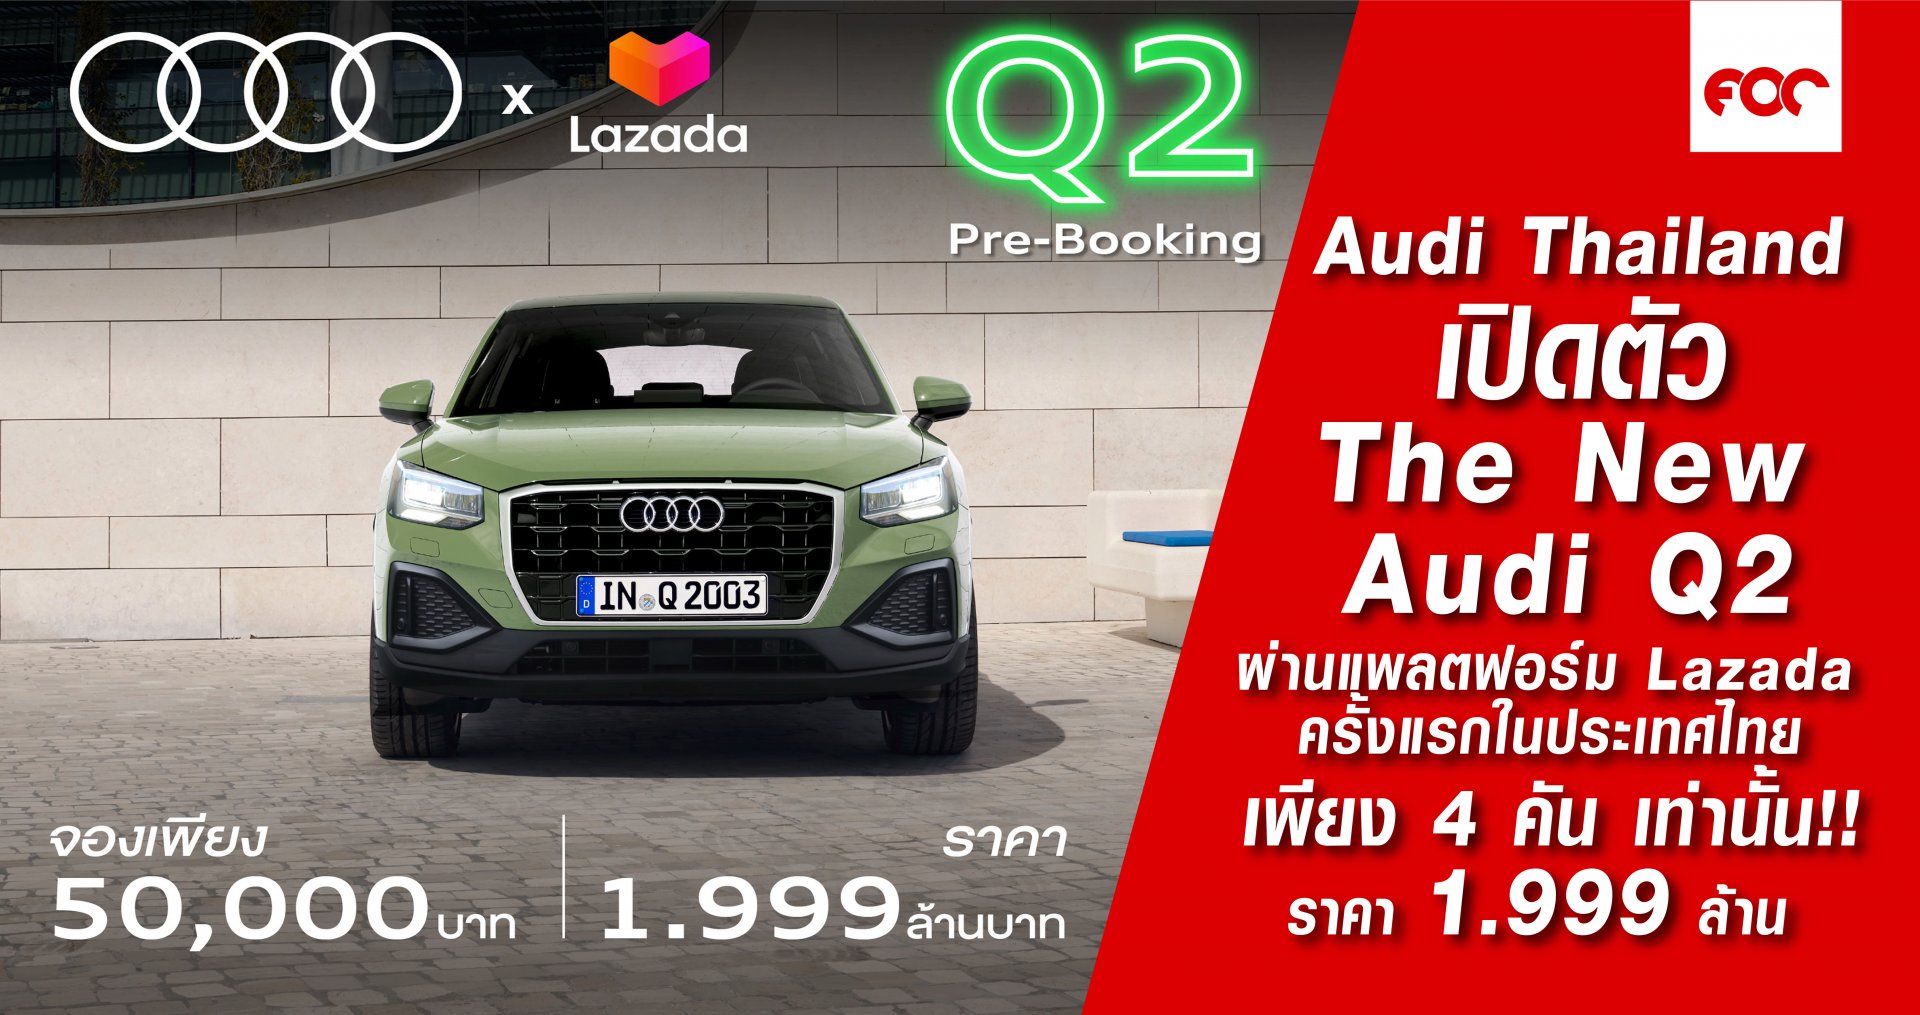 Audi Thailand  เปิดตัว  The New  Audi Q2